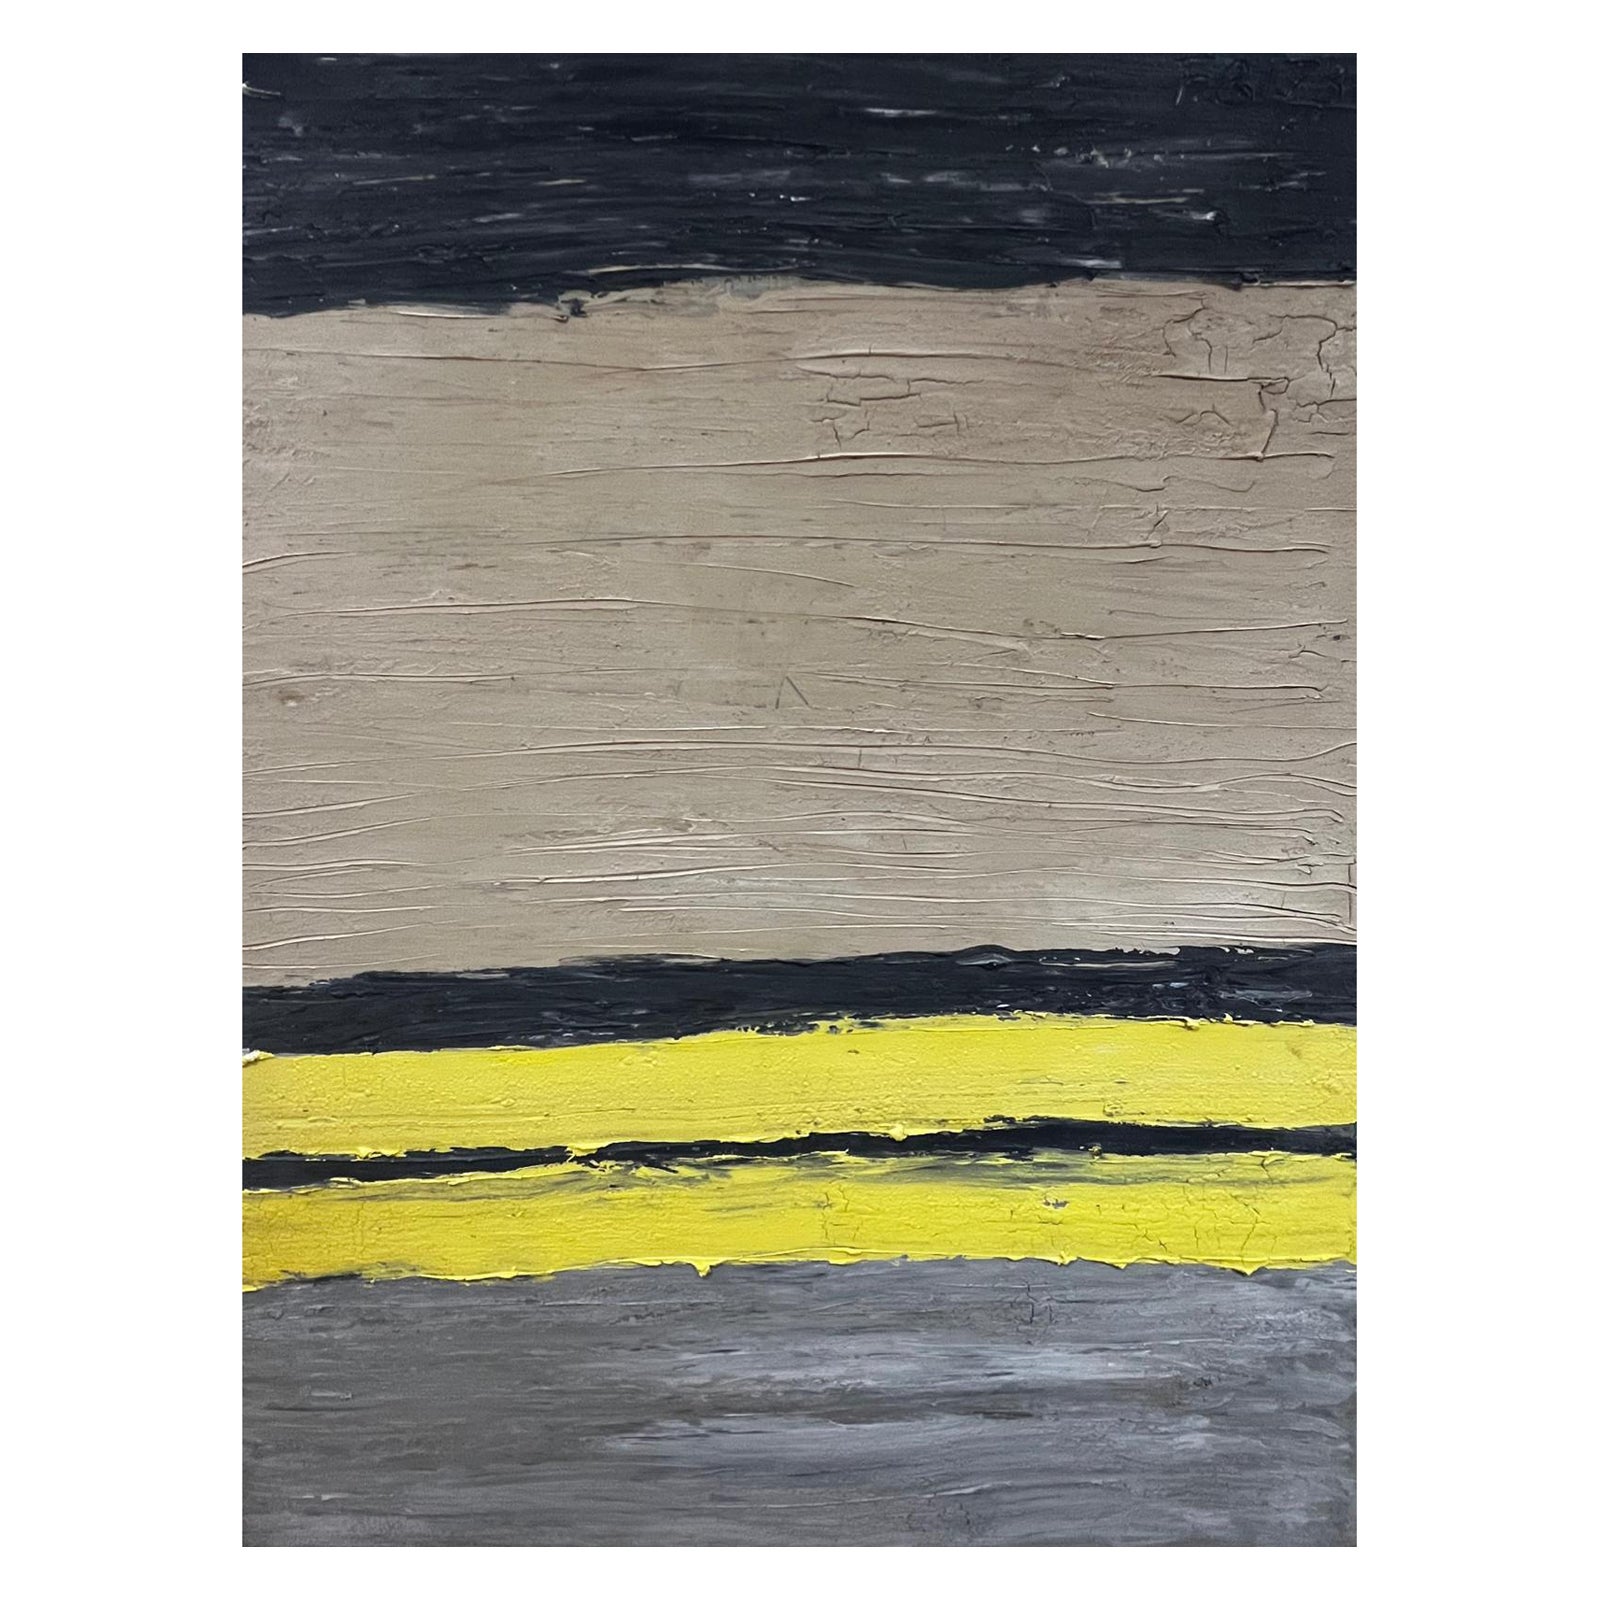 Enormous French Abstract Abstract Painting – Großes abstraktes französisches expressionistisches Ölgemälde des 20. Jahrhunderts in Schwarz, Grau, Gelb